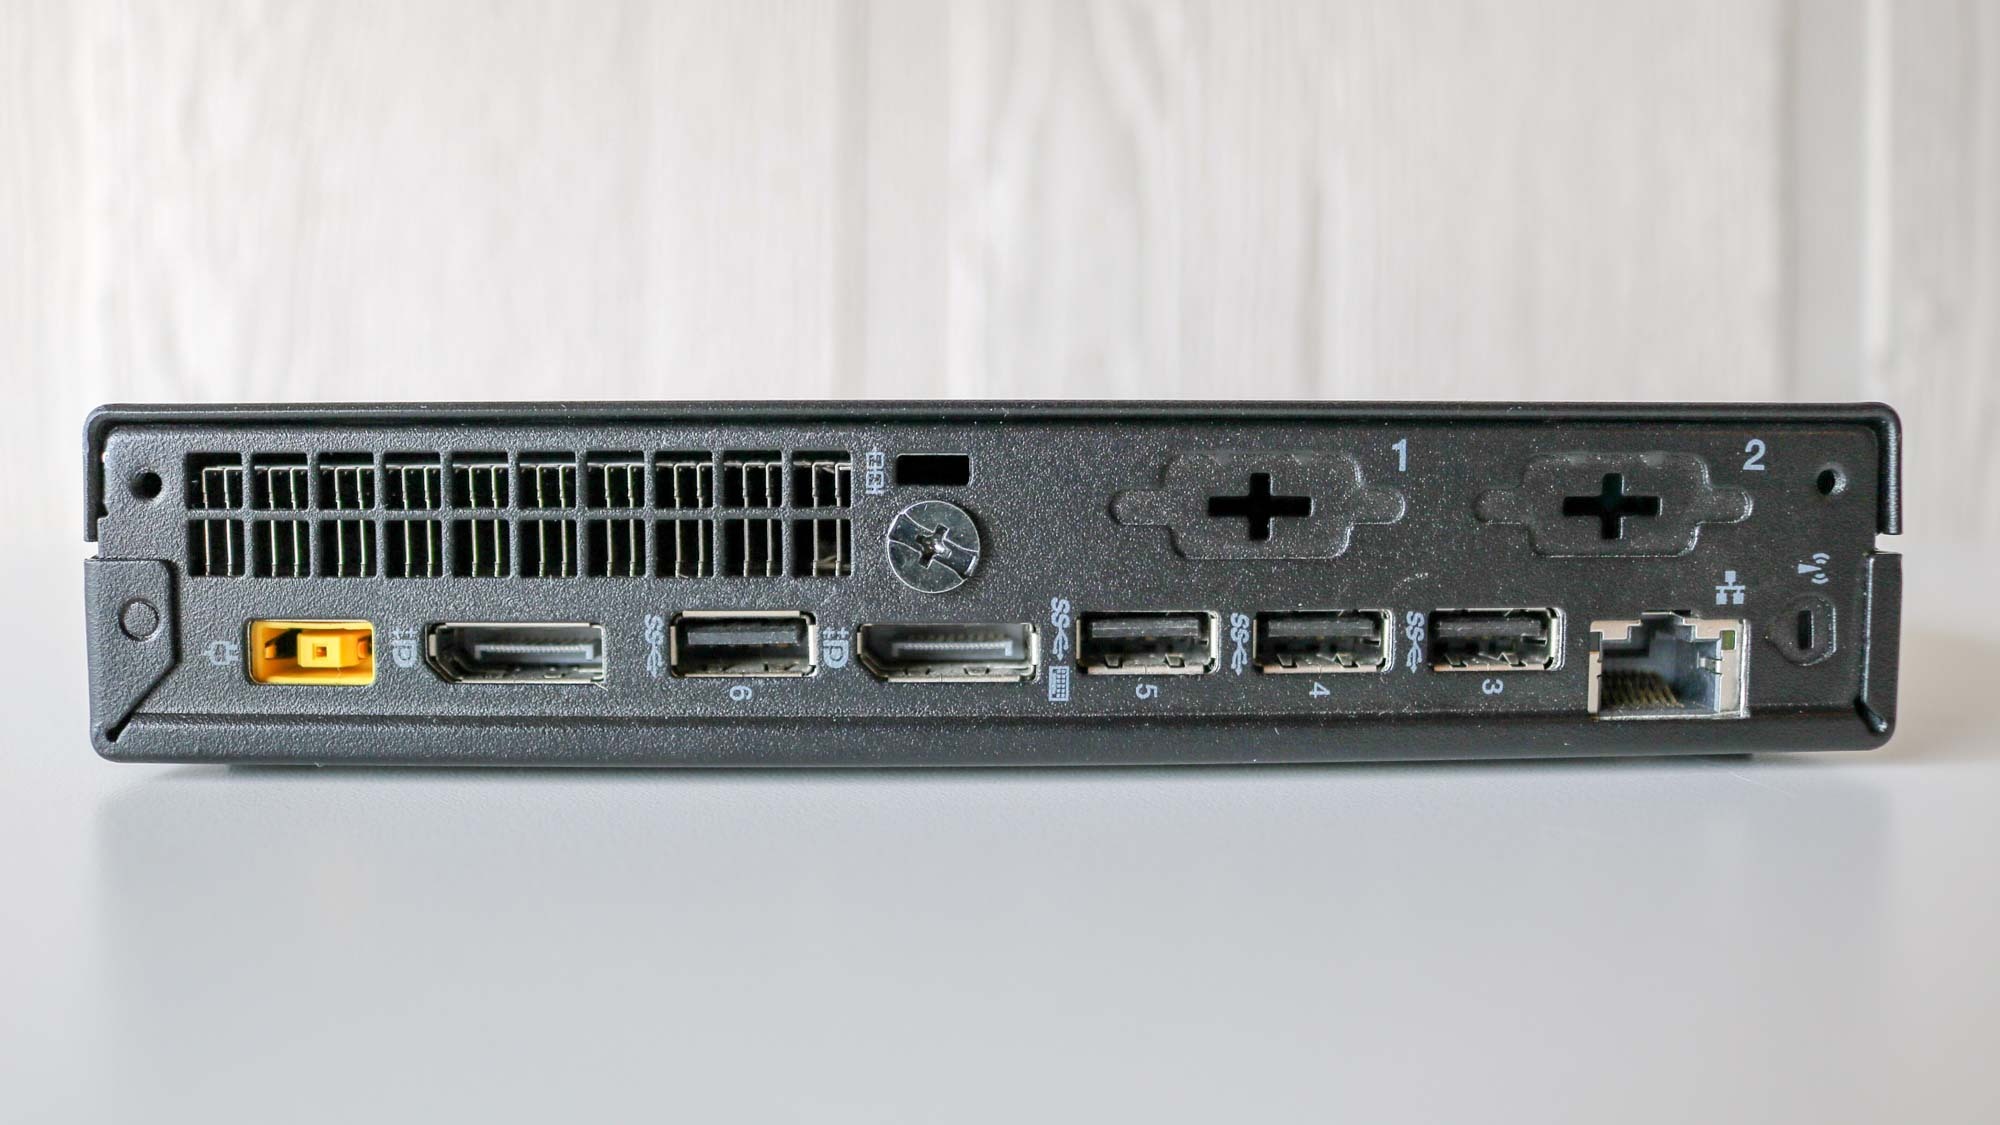 The rear I/O of the Lenovo ThinkCentre M910q Tiny